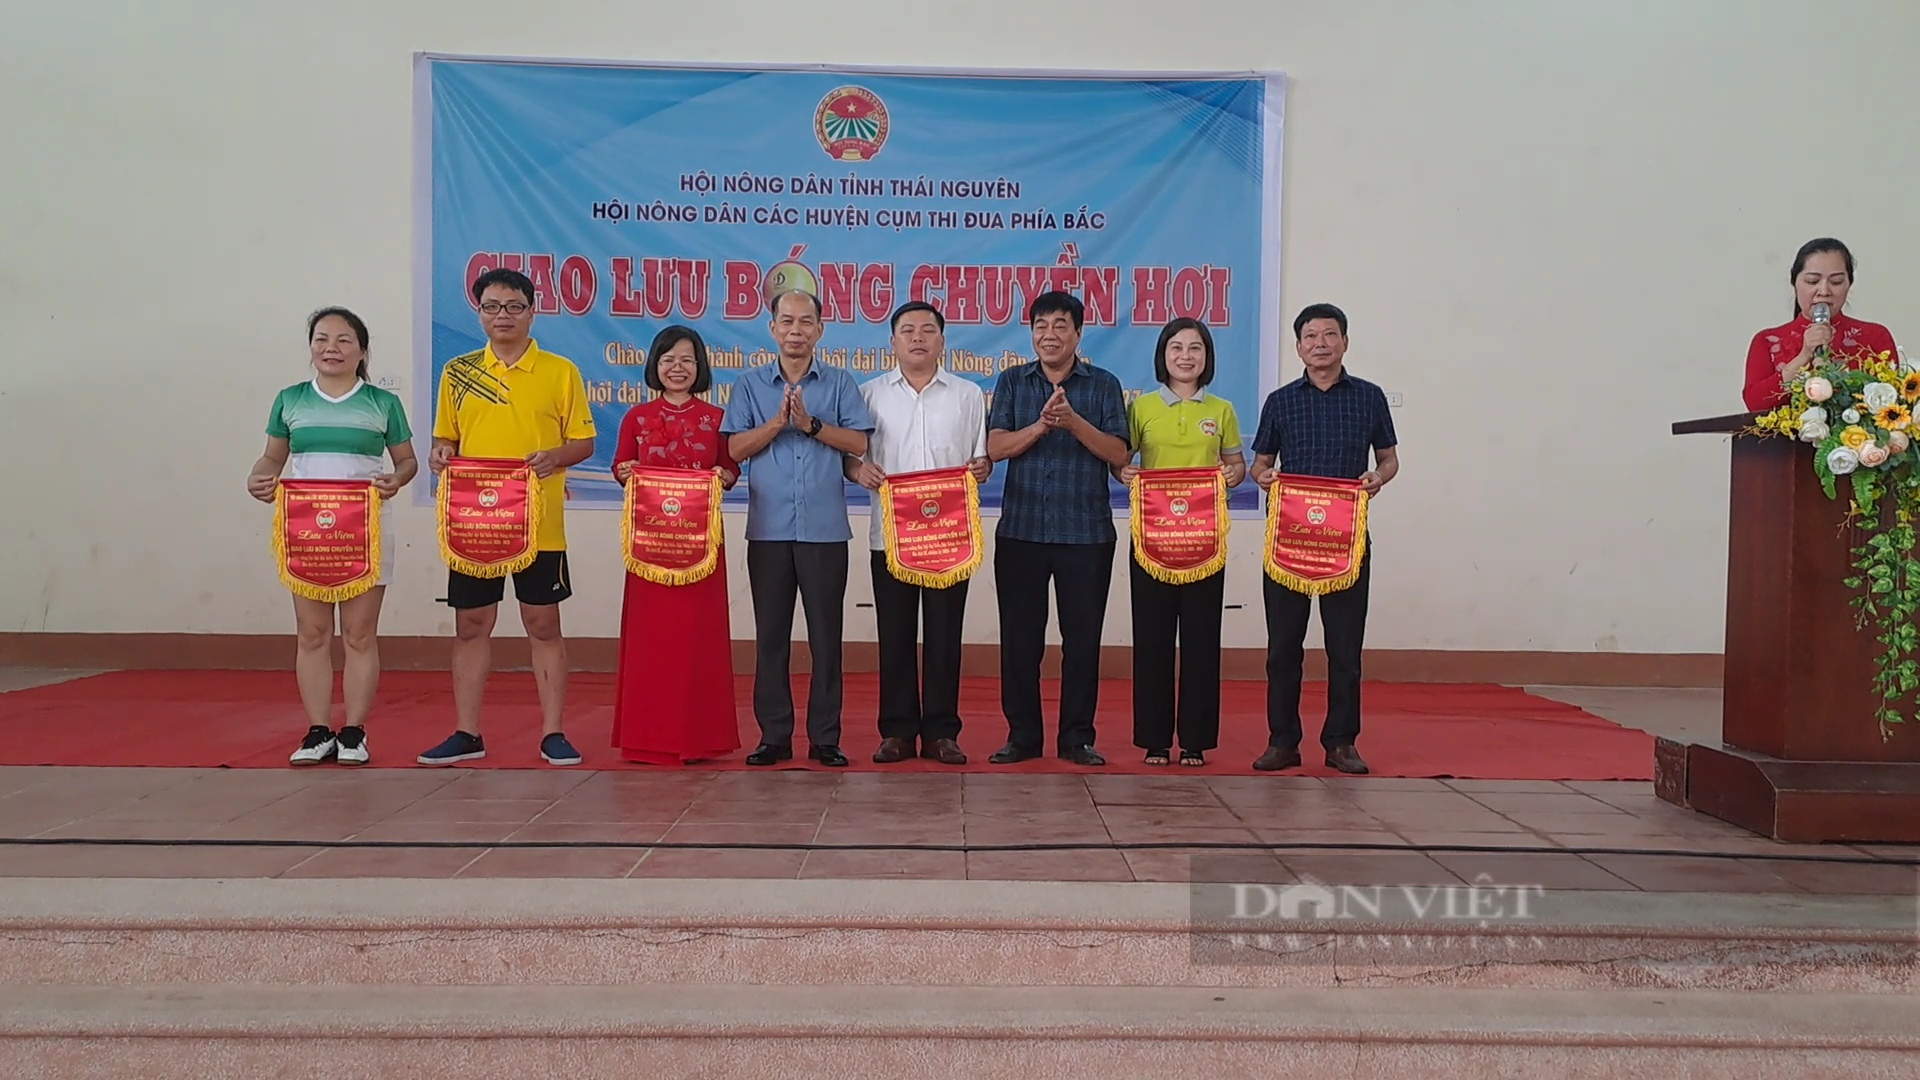 Hội Nông dân Thái Nguyên: Giao lưu bóng chuyền hơi cụm thi đua phía Bắc chào mừng thành công đại hội các cấp - Ảnh 4.